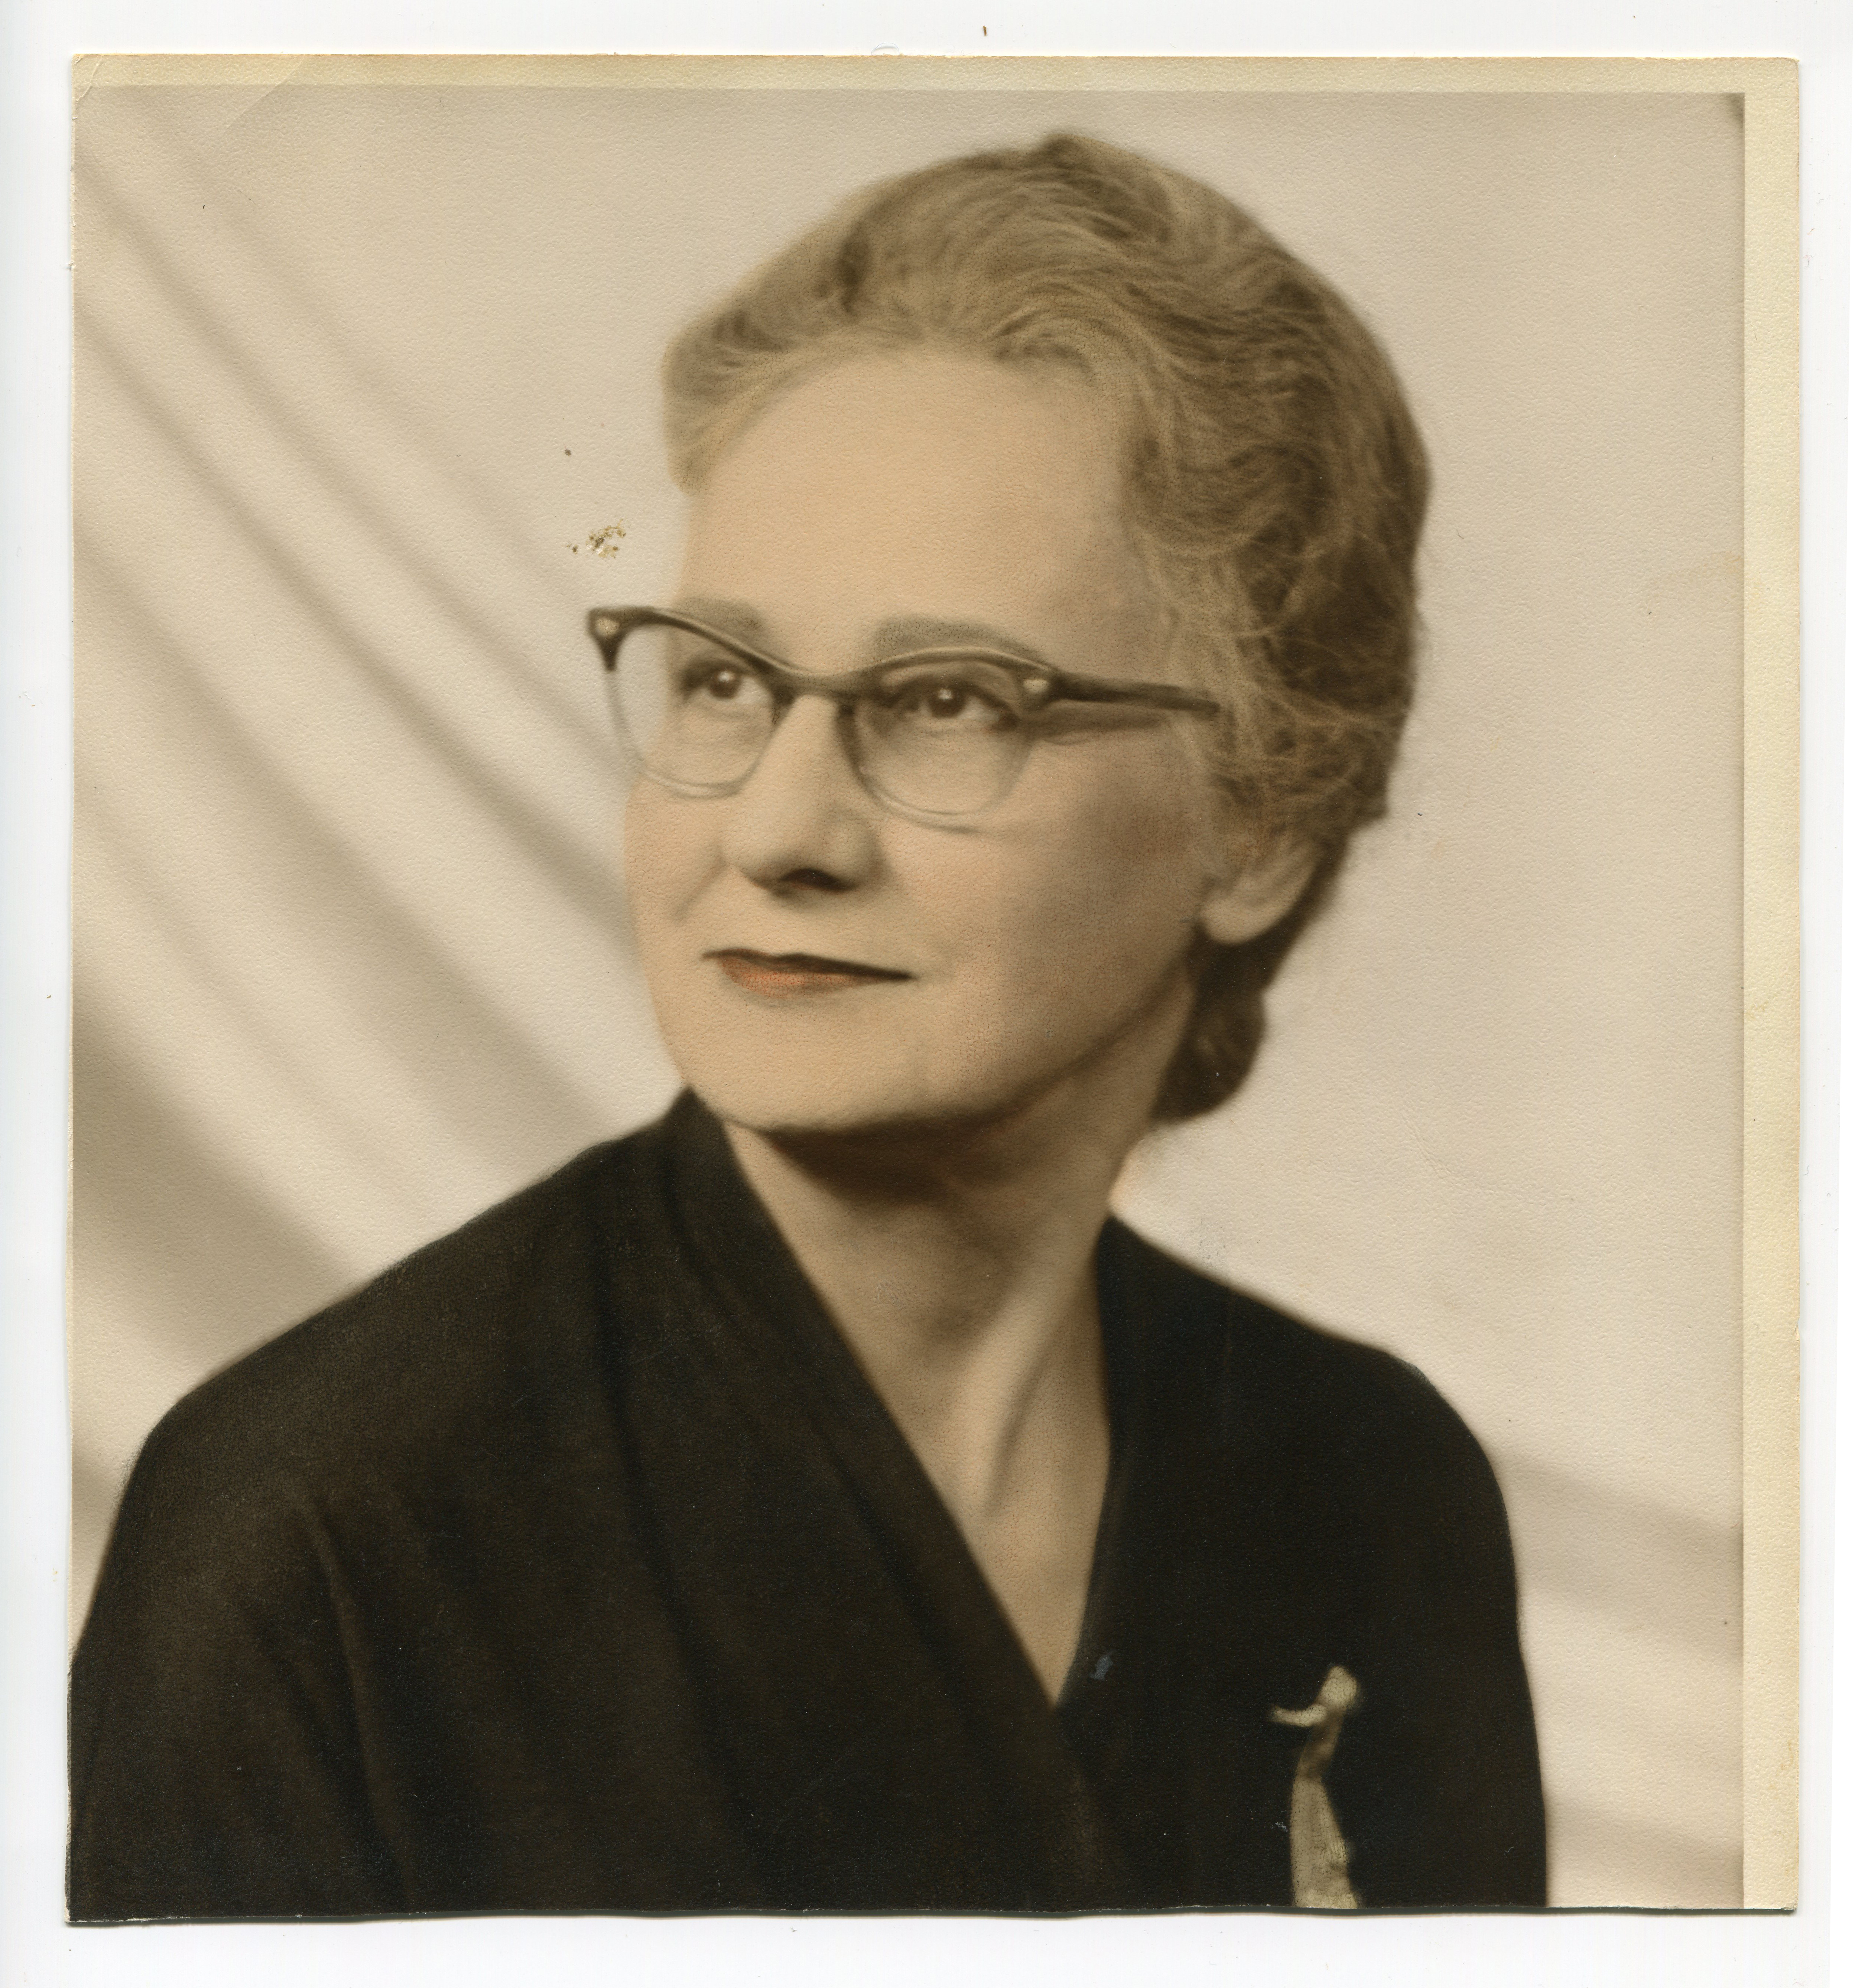 1956 Lillian Reid portrait